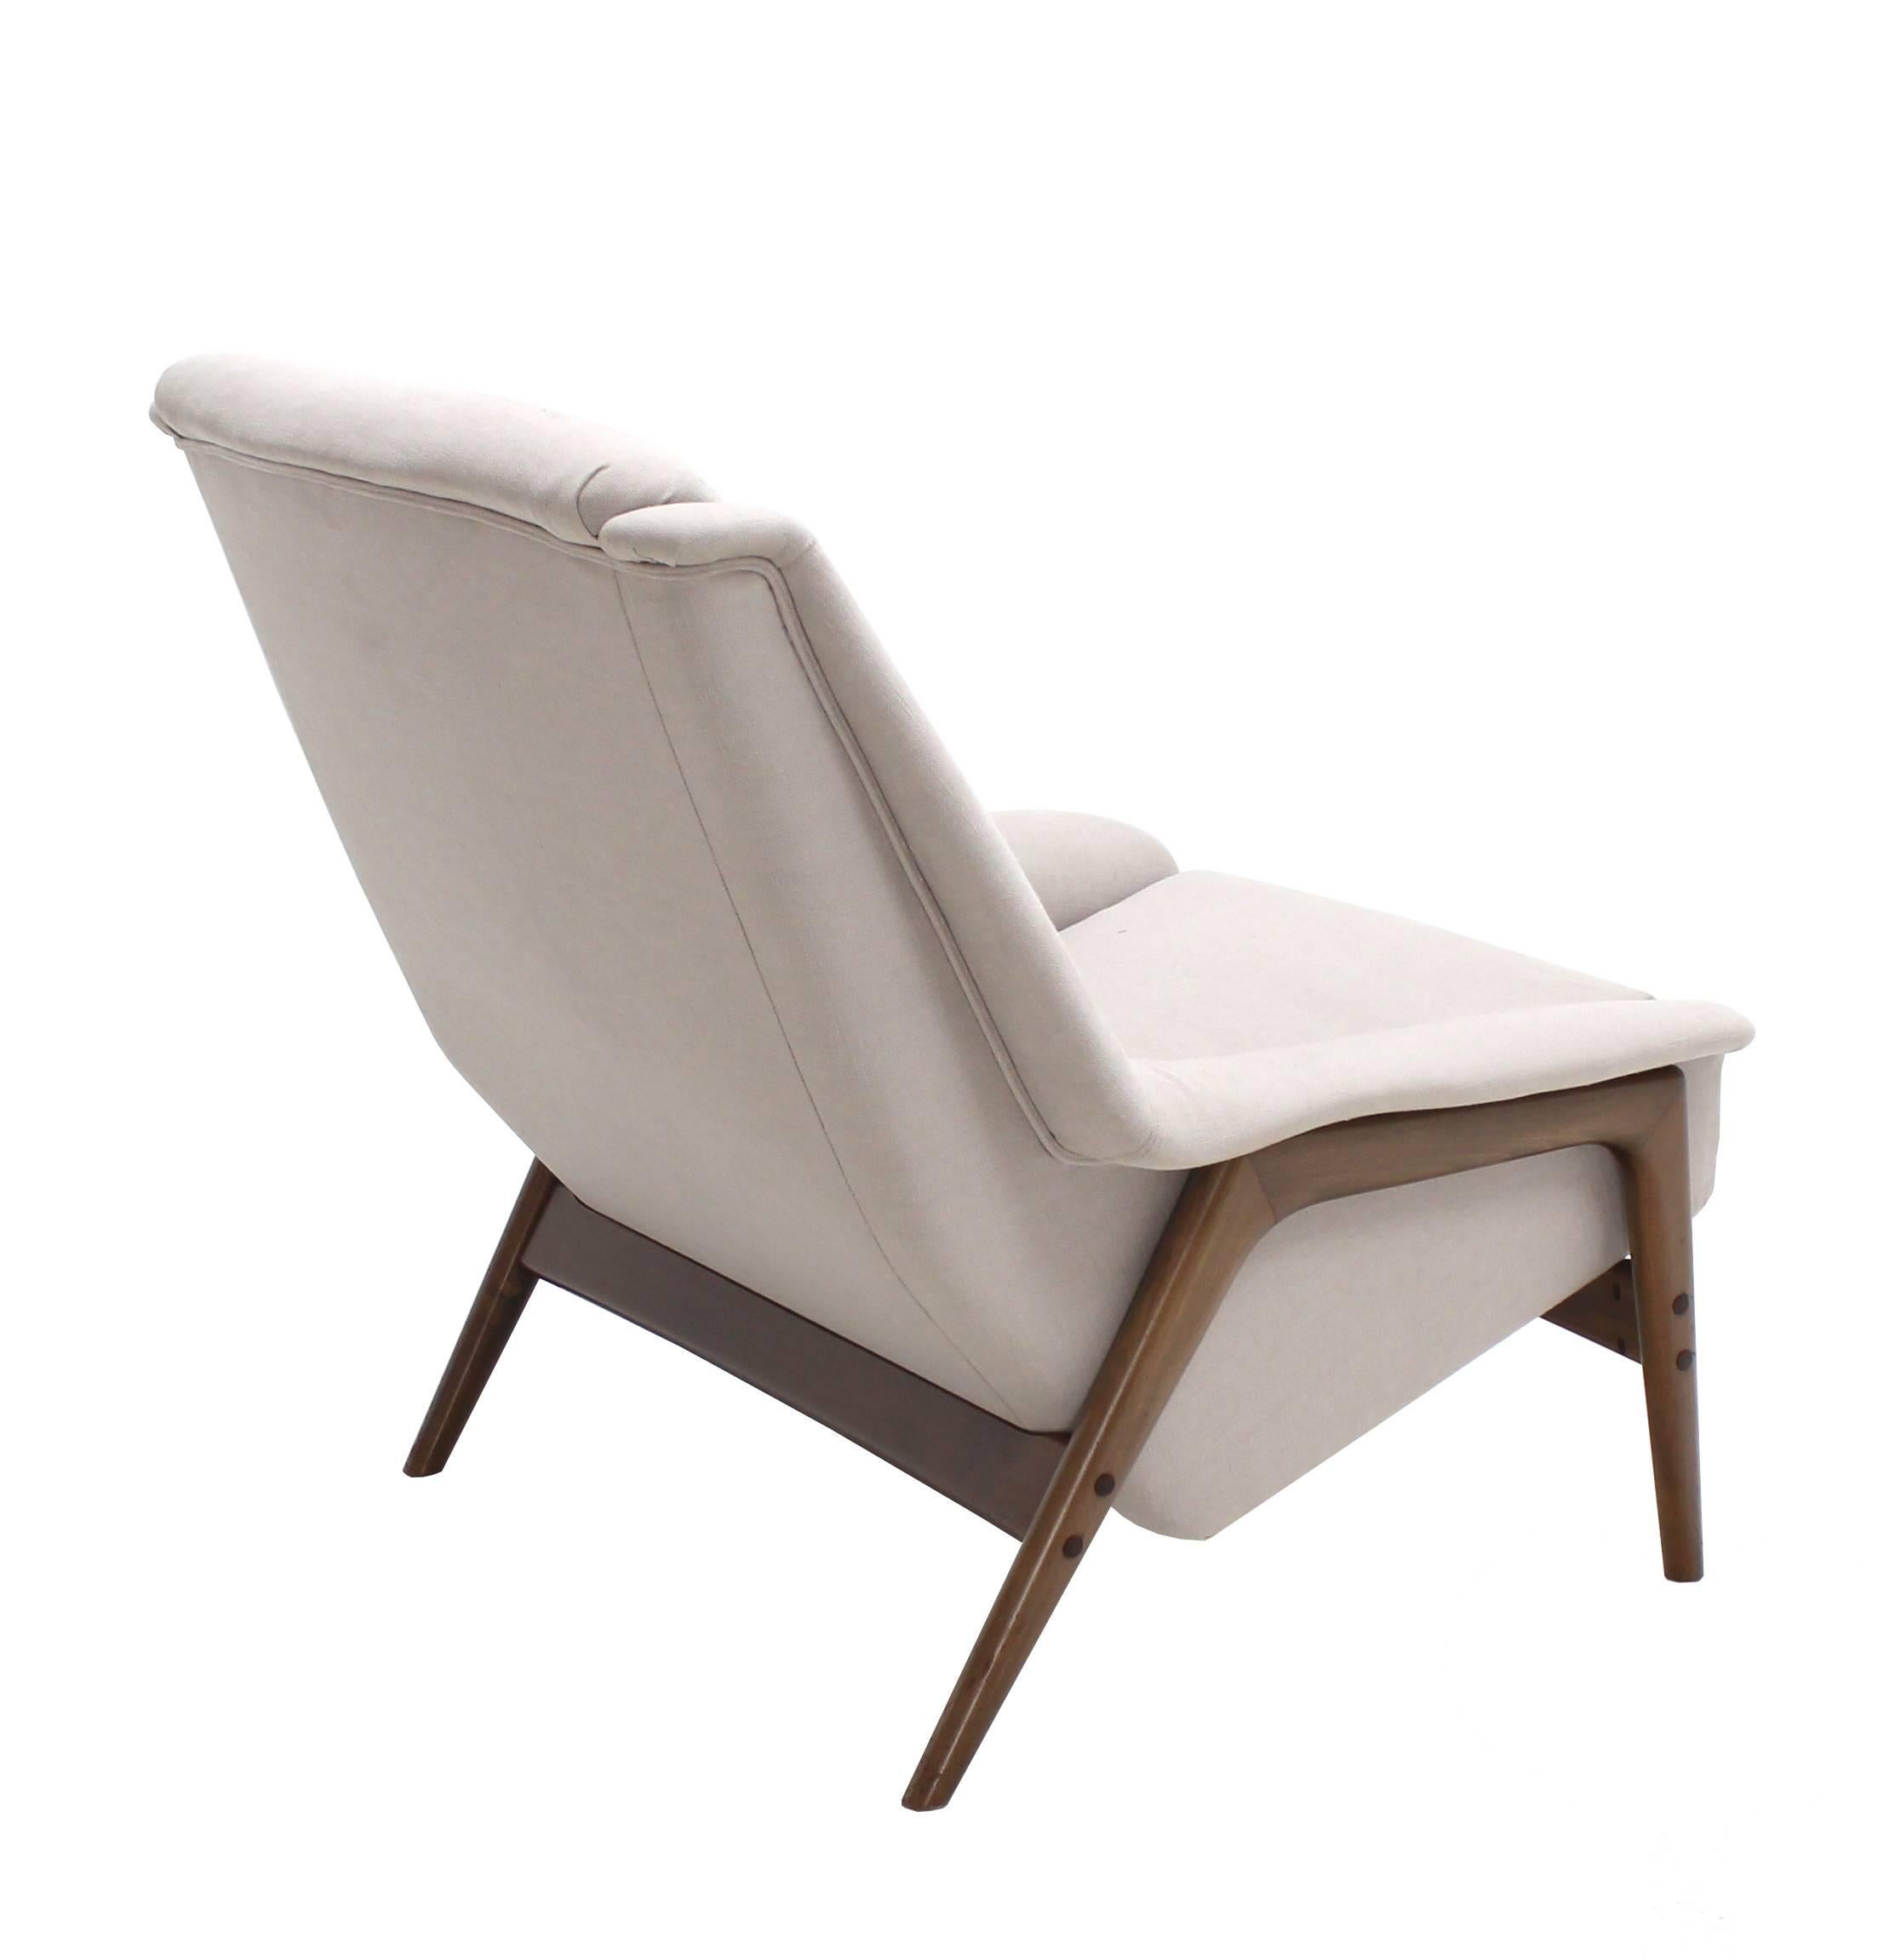 Danish Mid Century Modern New Upholstery Lounge Chair Teak Frame 2